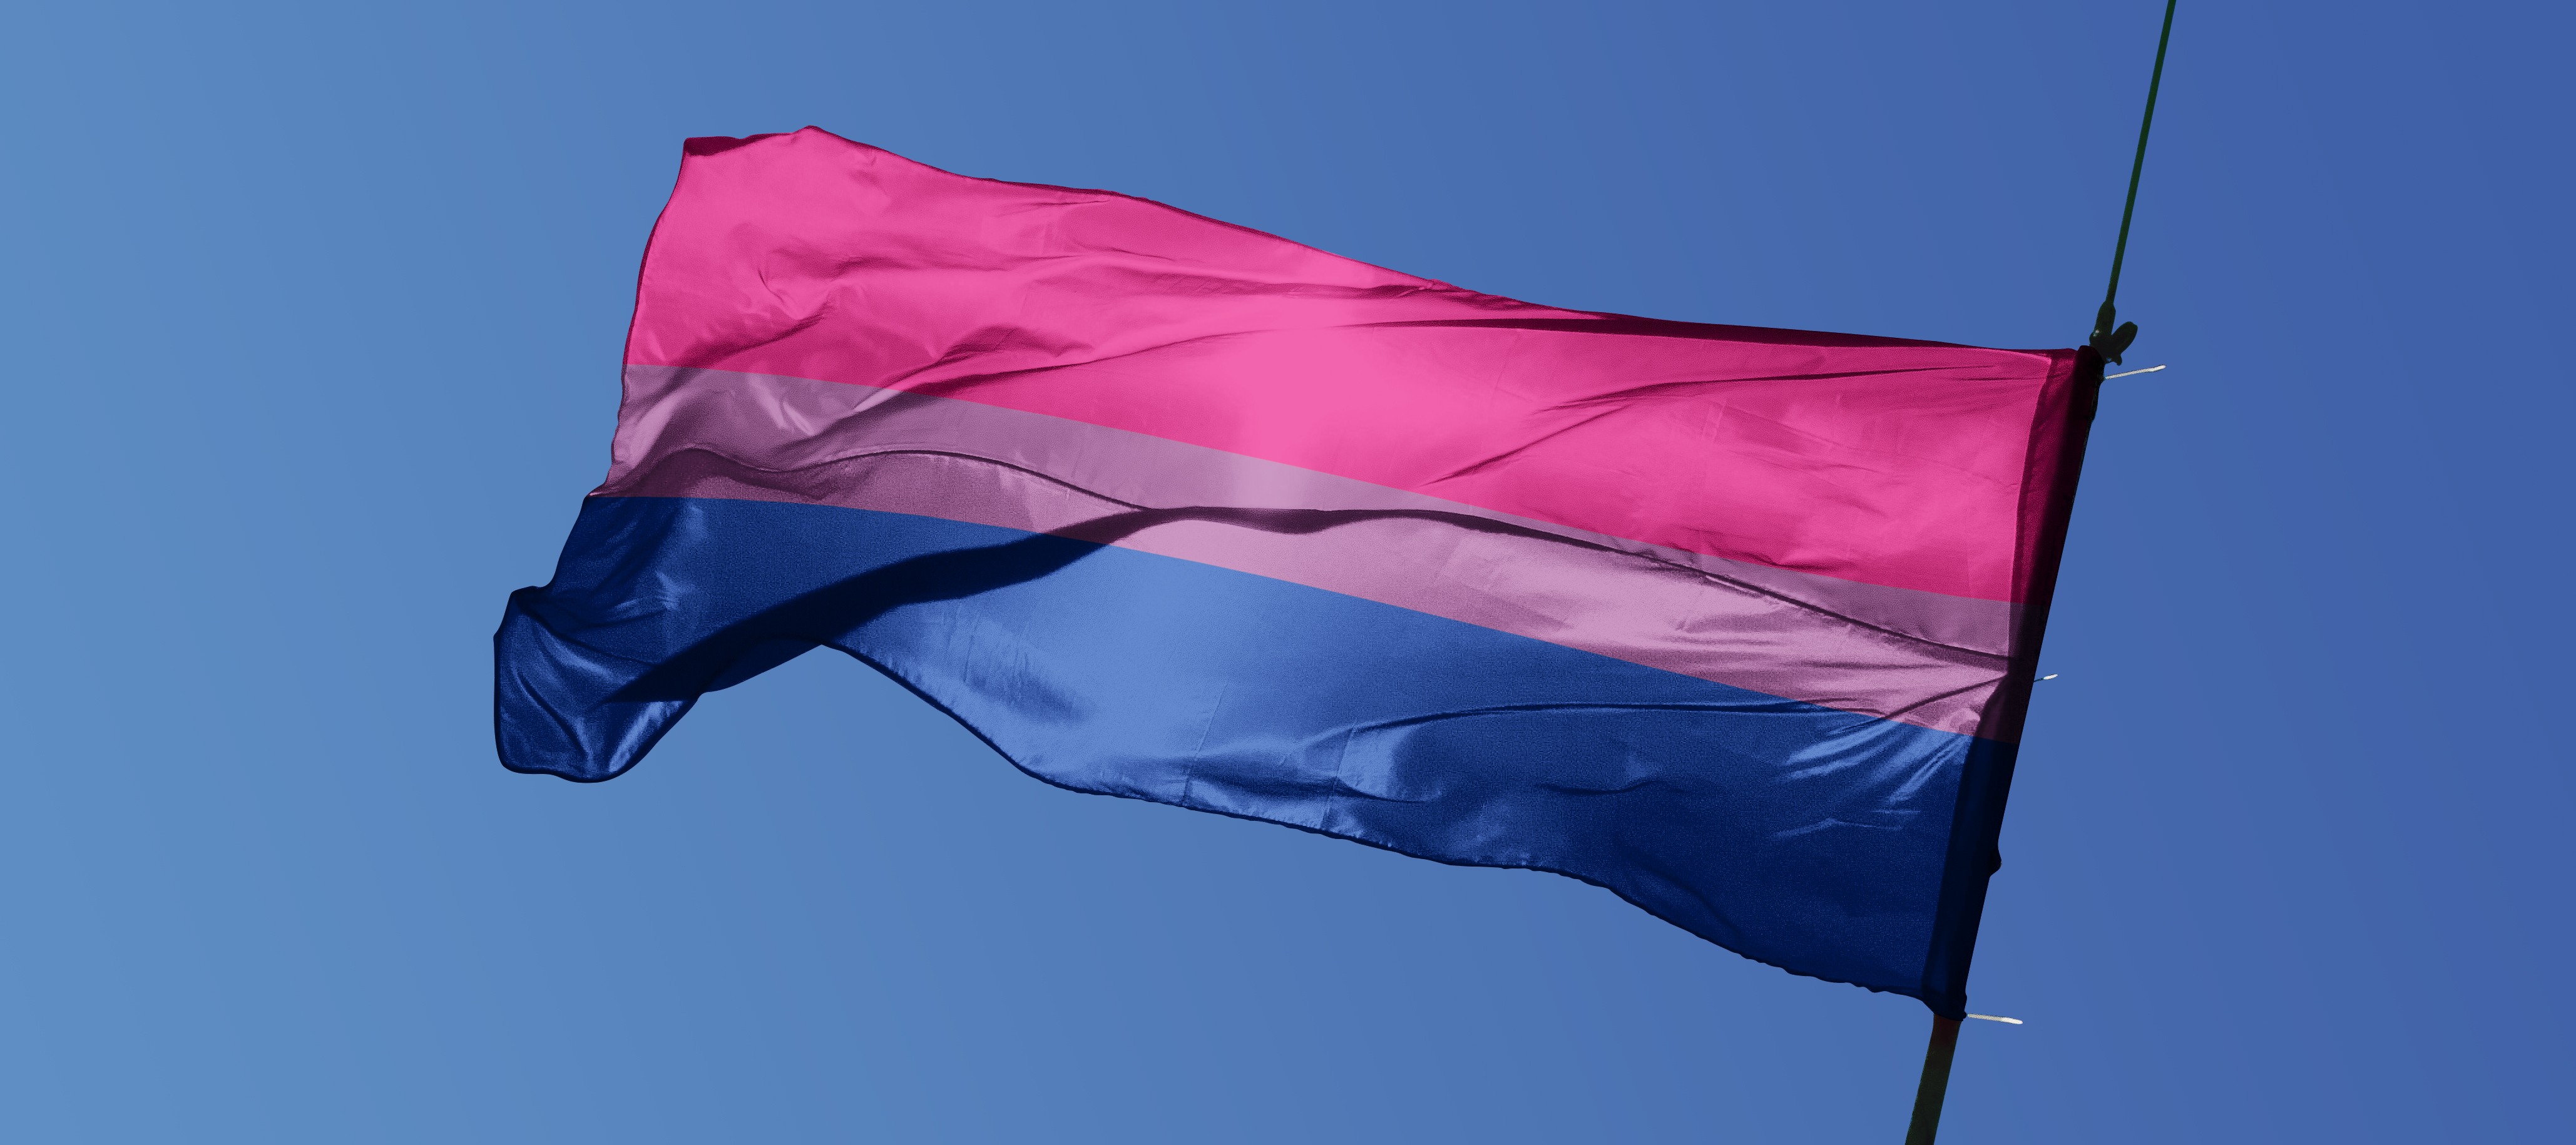 Bandeira do orgulho bissexual, composta pelas cores magenta, lilás e azul royal (Foto: Getty Images)